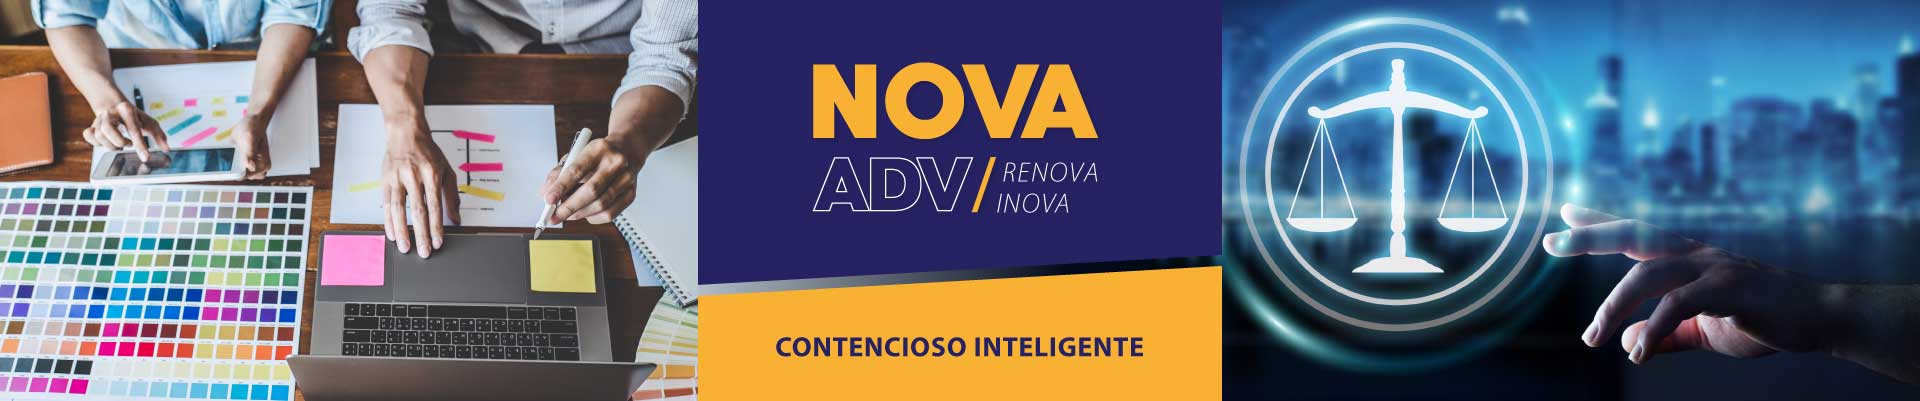 NovaAdv - Contencioso inteligente